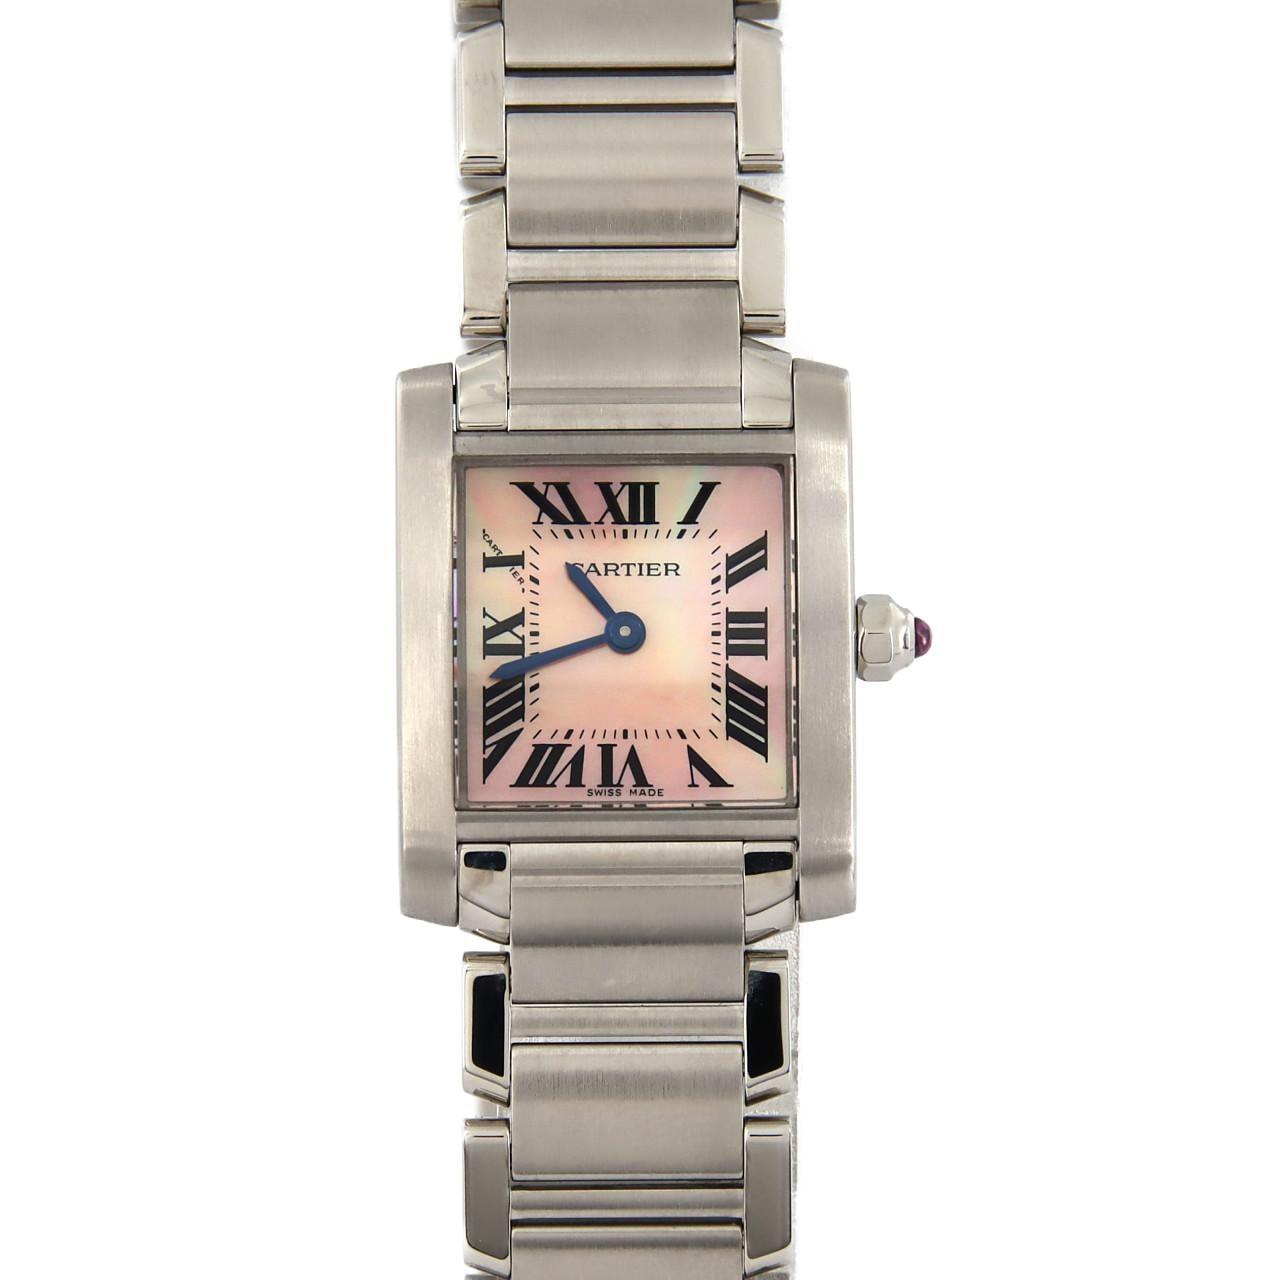 無償保証Cartier カルティエ W51028Q3 タンクフランセーズSM レディース 腕時計 クオーツ ピンクシェル ローマンインデックス 2針 管理RY20004739 タンクフランセーズ